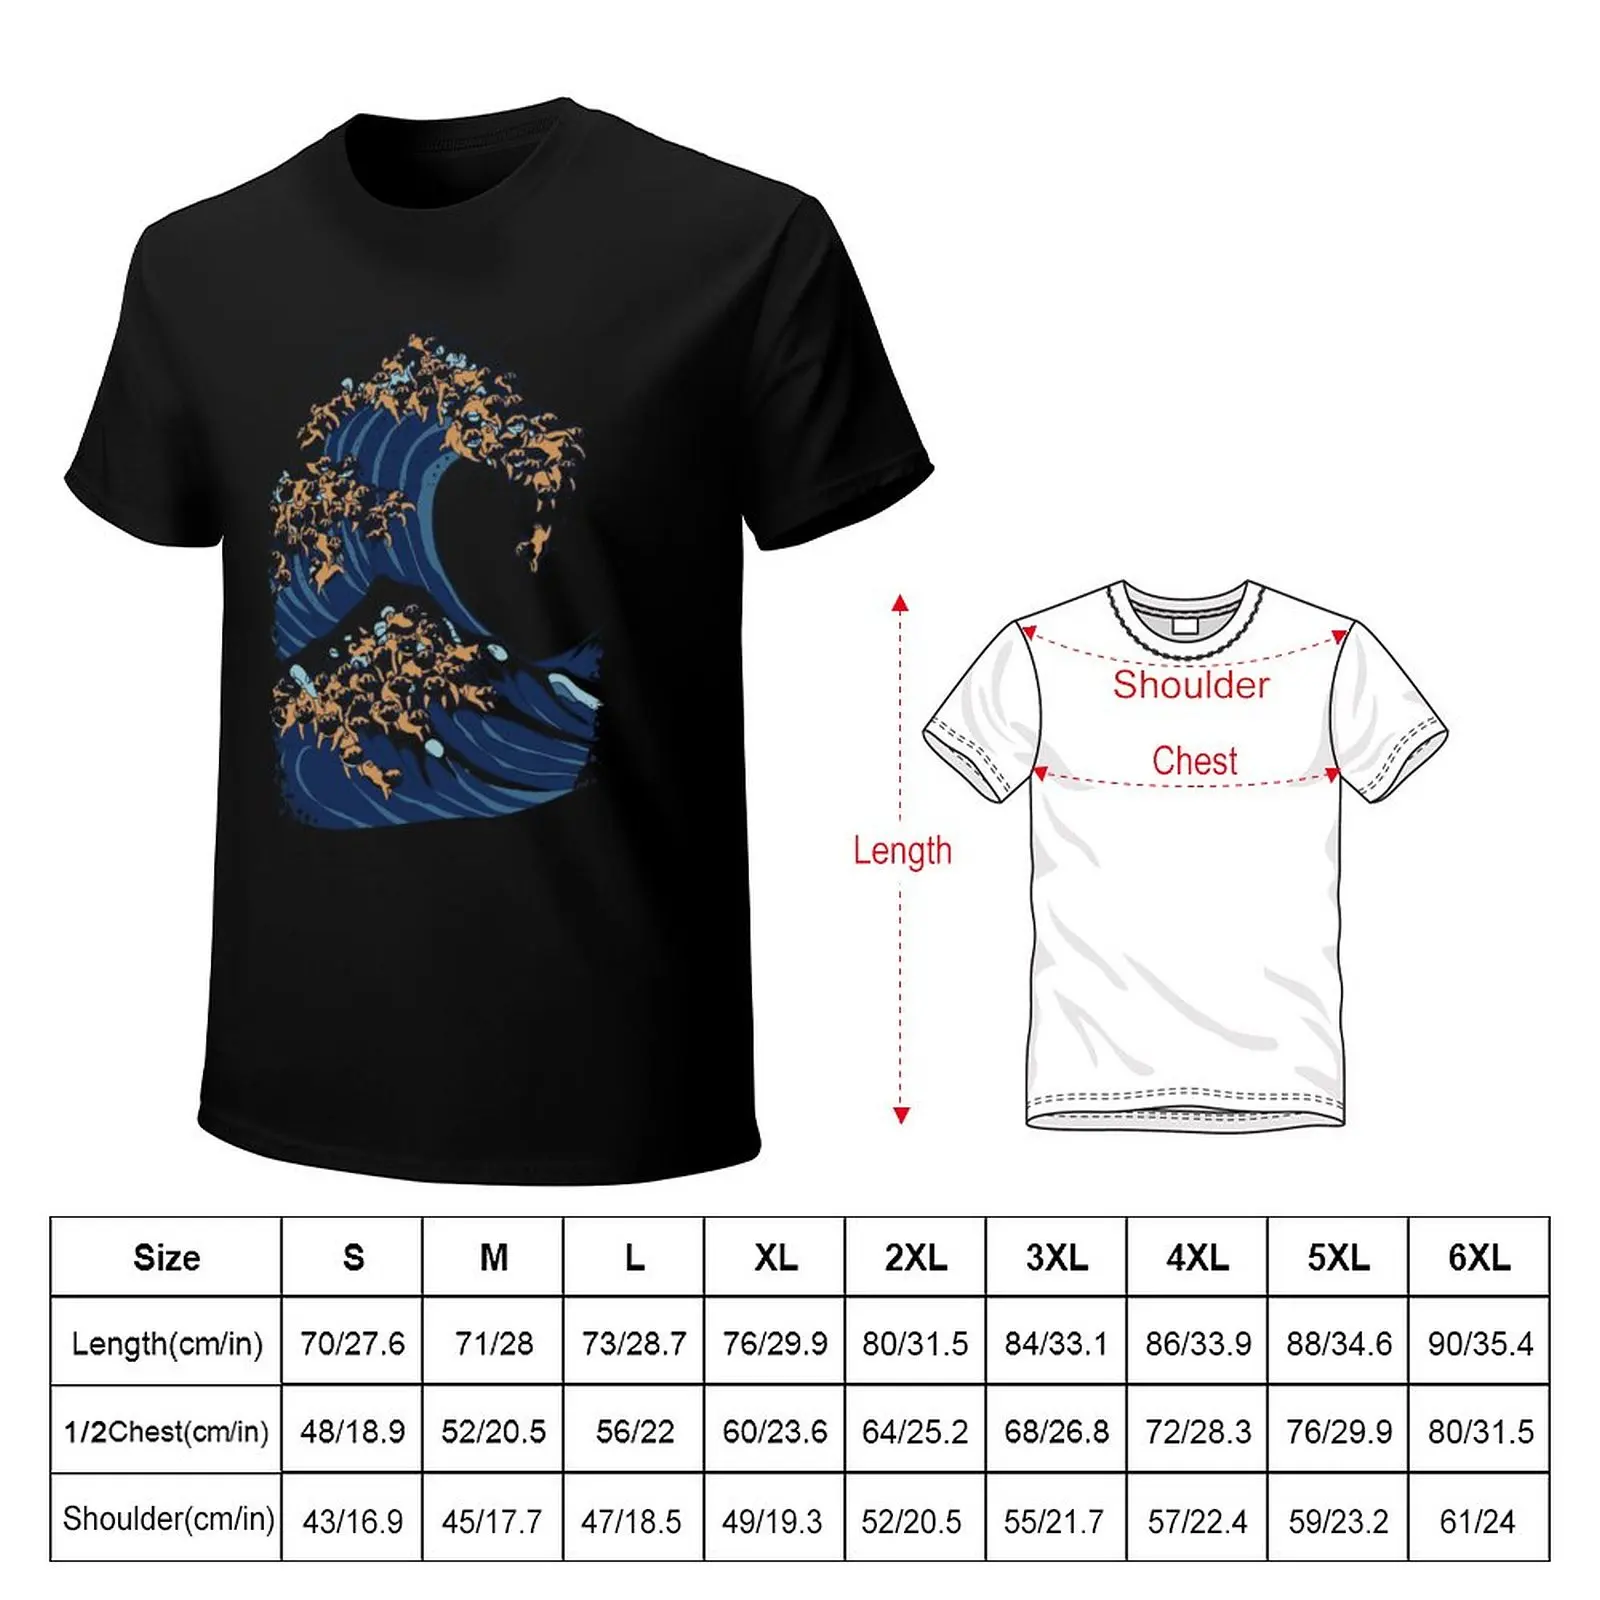 Футболка The Great Wave of Shiba Inu, милые топы, футболка нового выпуска, винтажная футболка, мужские высокие футболки.